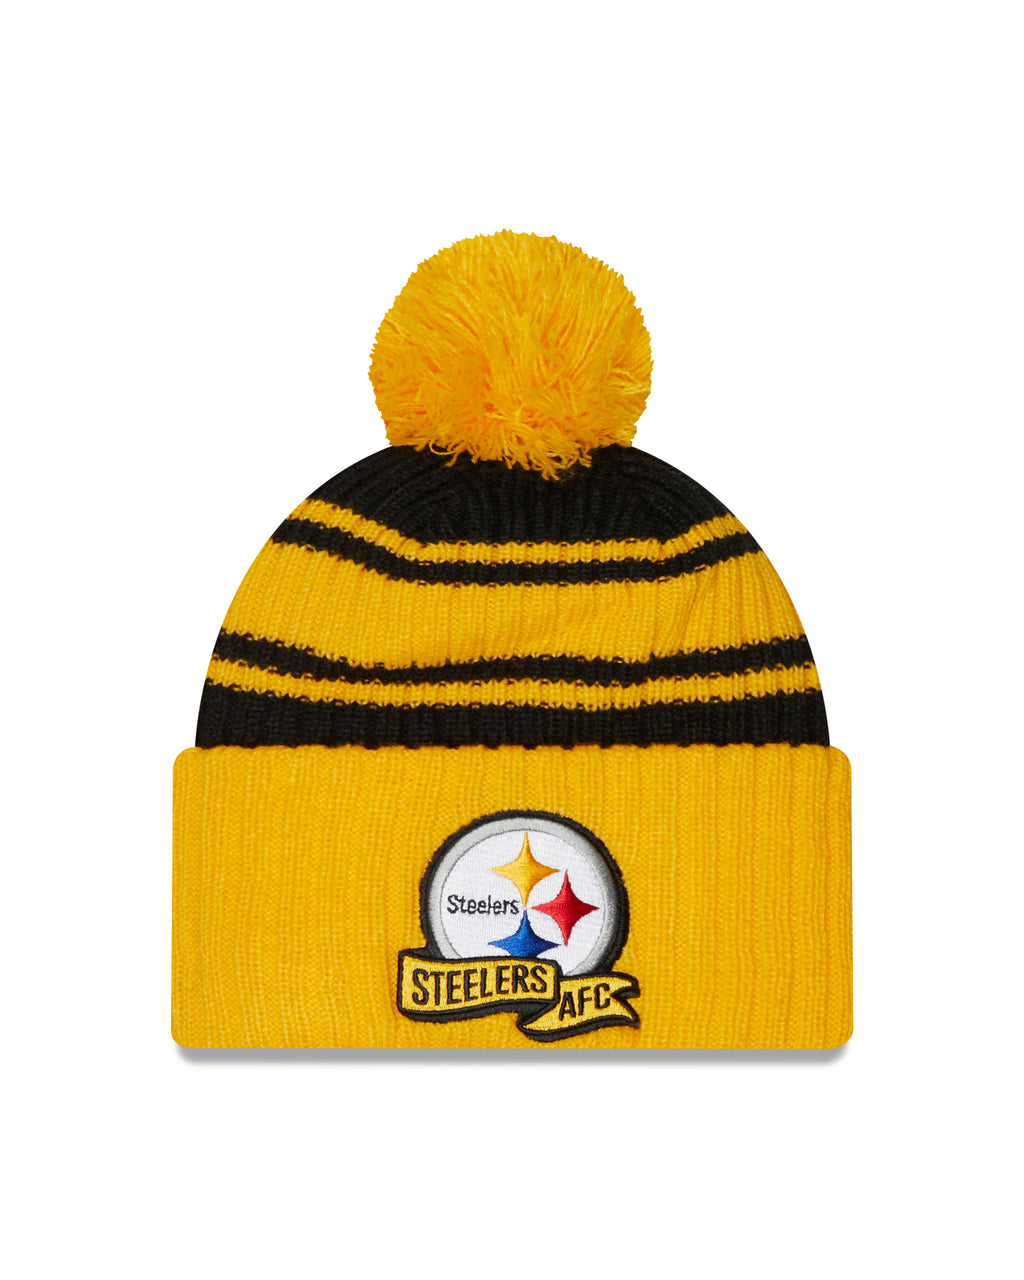 New Era NFL Pittsburgh Steelers Pom Knit Beanie Yellow